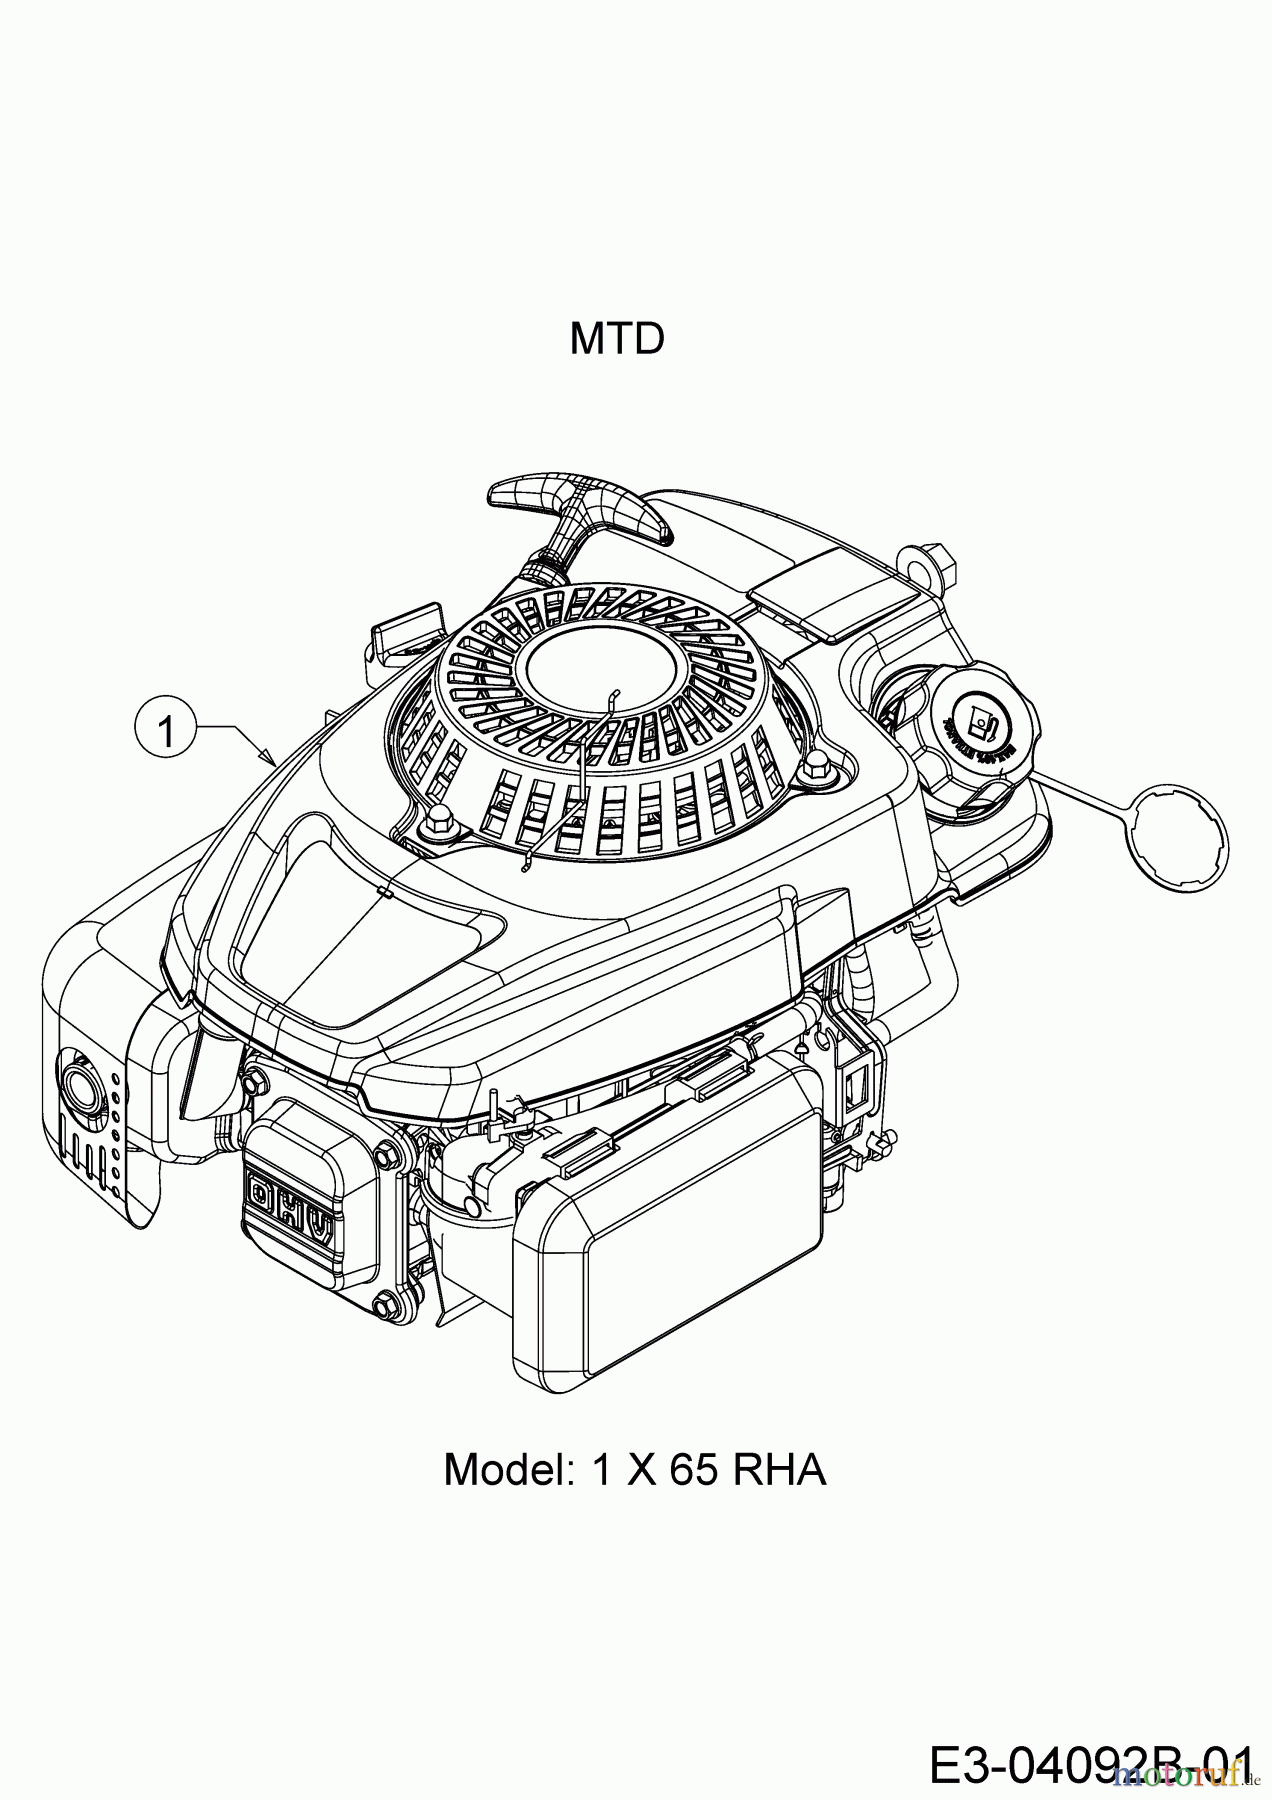  MTD Motormäher mit Antrieb Smart 53 SPOHW 12A-PBJ6600 (2019) Motor MTD